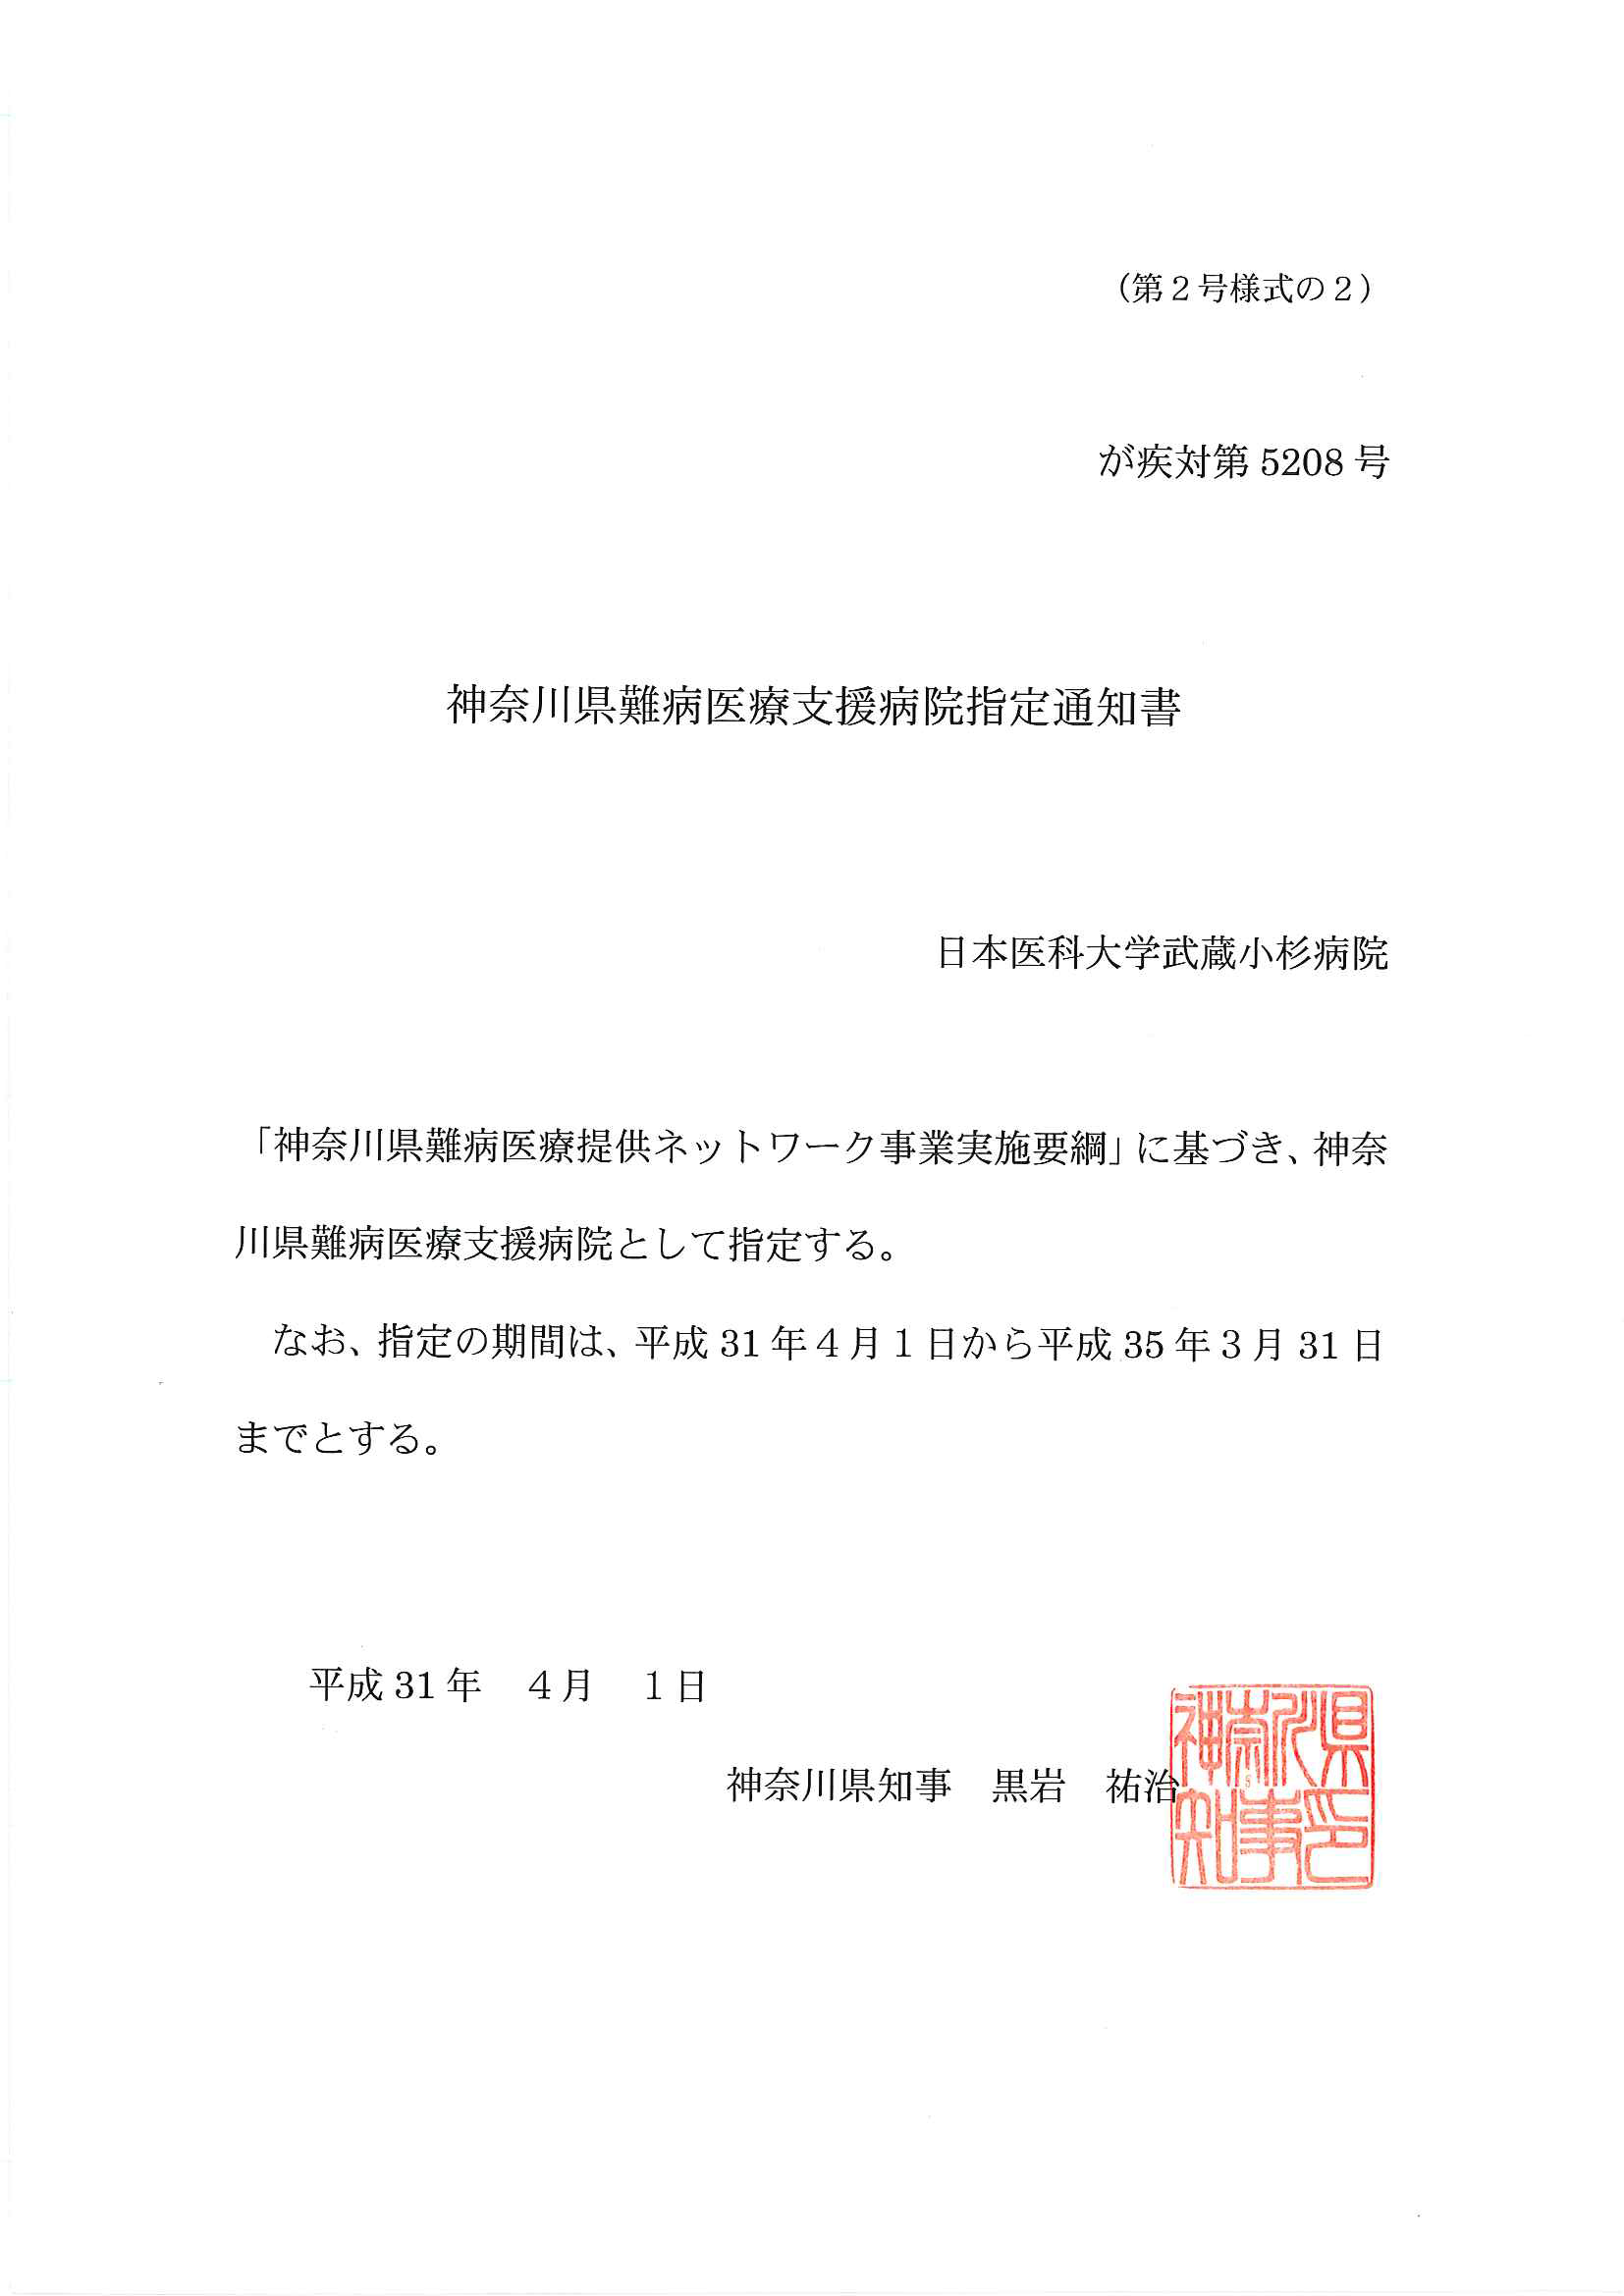 神奈川県難病医療支援病院指定通知書